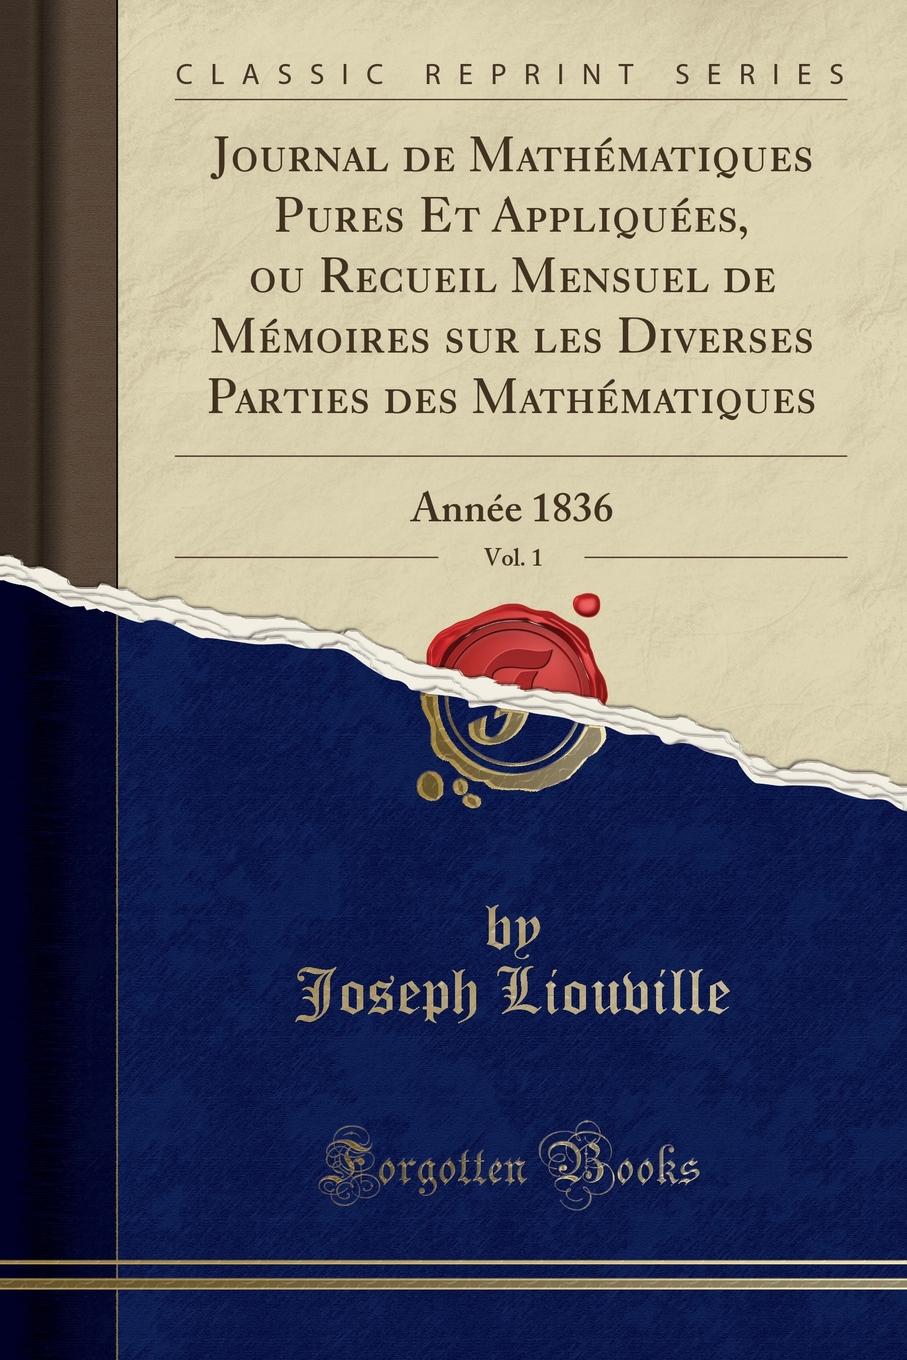 Joseph Liouville Journal de Mathematiques Pures Et Appliquees, ou Recueil Mensuel de Memoires sur les Diverses Parties des Mathematiques, Vol. 1. Annee 1836 (Classic Reprint)